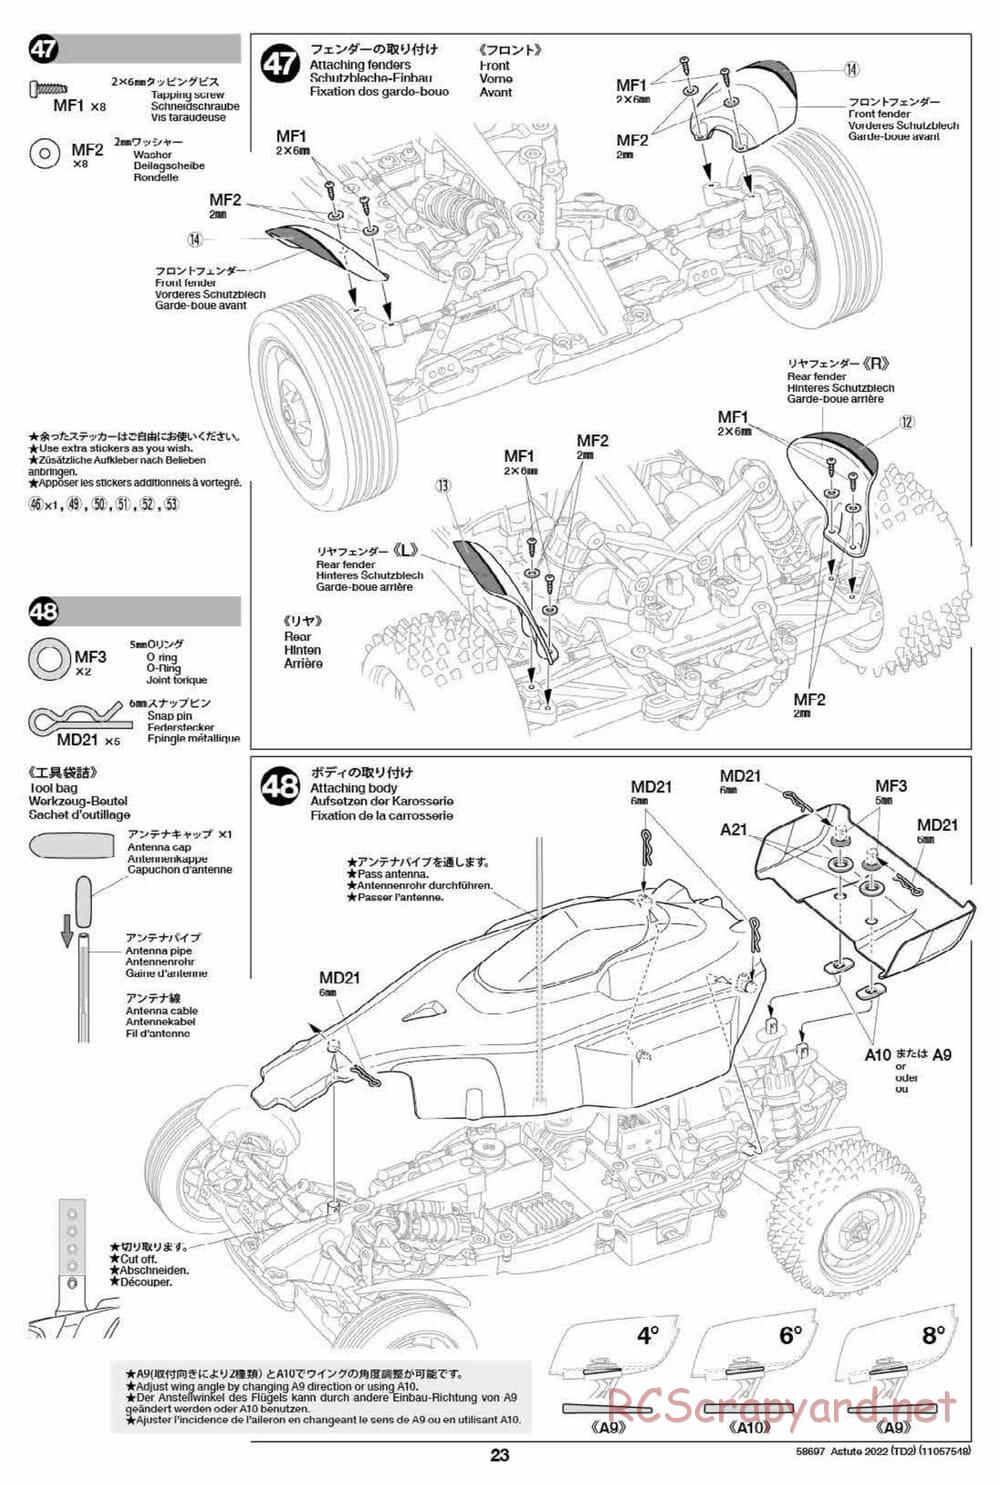 Tamiya - Astute 2022 - TD2 Chassis - Manual - Page 23